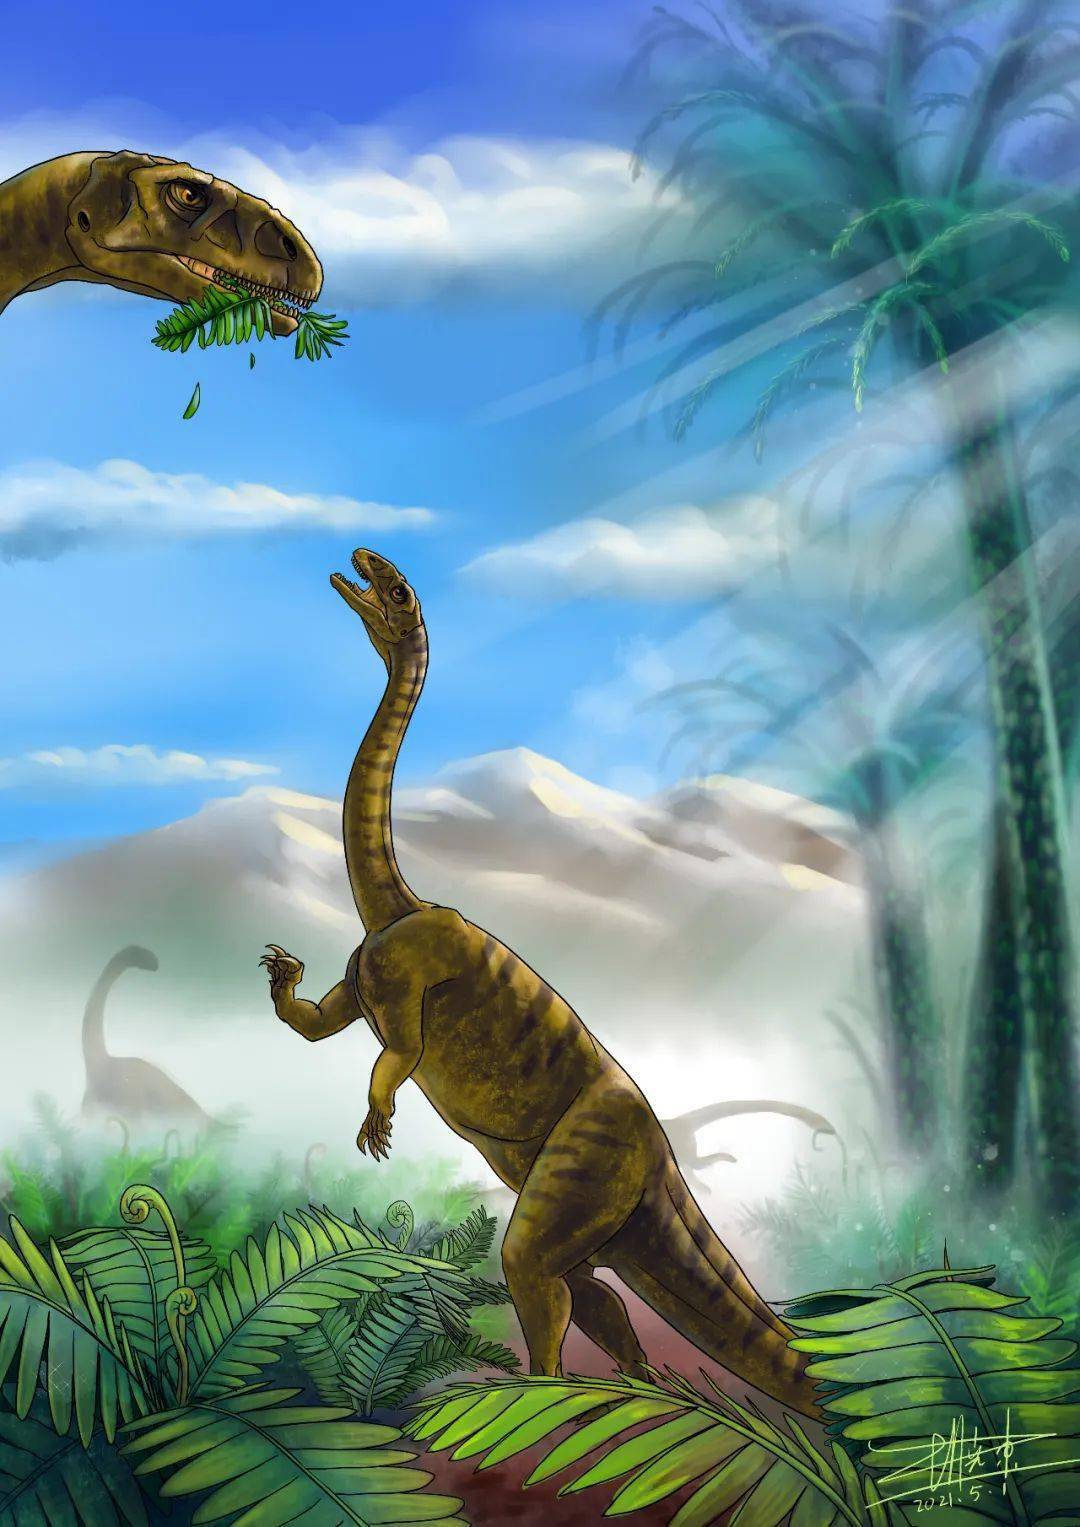 该幼体化石的牙齿呈叶状,是一类植食性恐龙,食物以蕨类和松柏类为主.